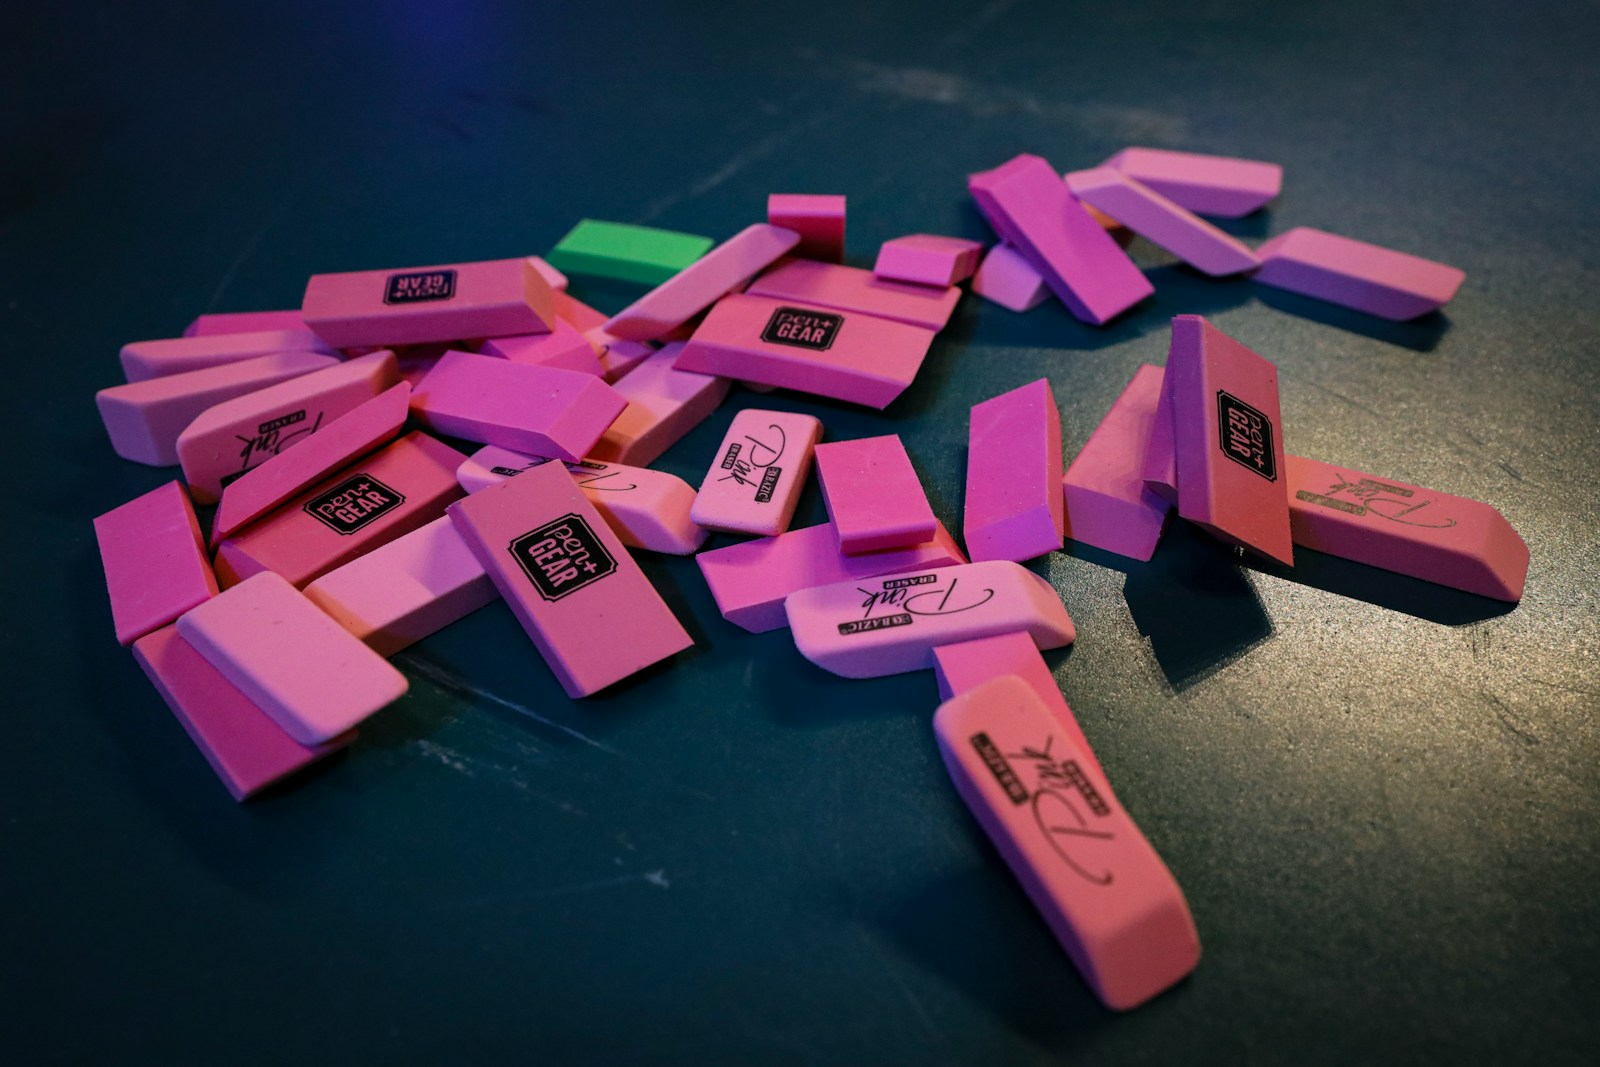 pink and purple plastic blocks